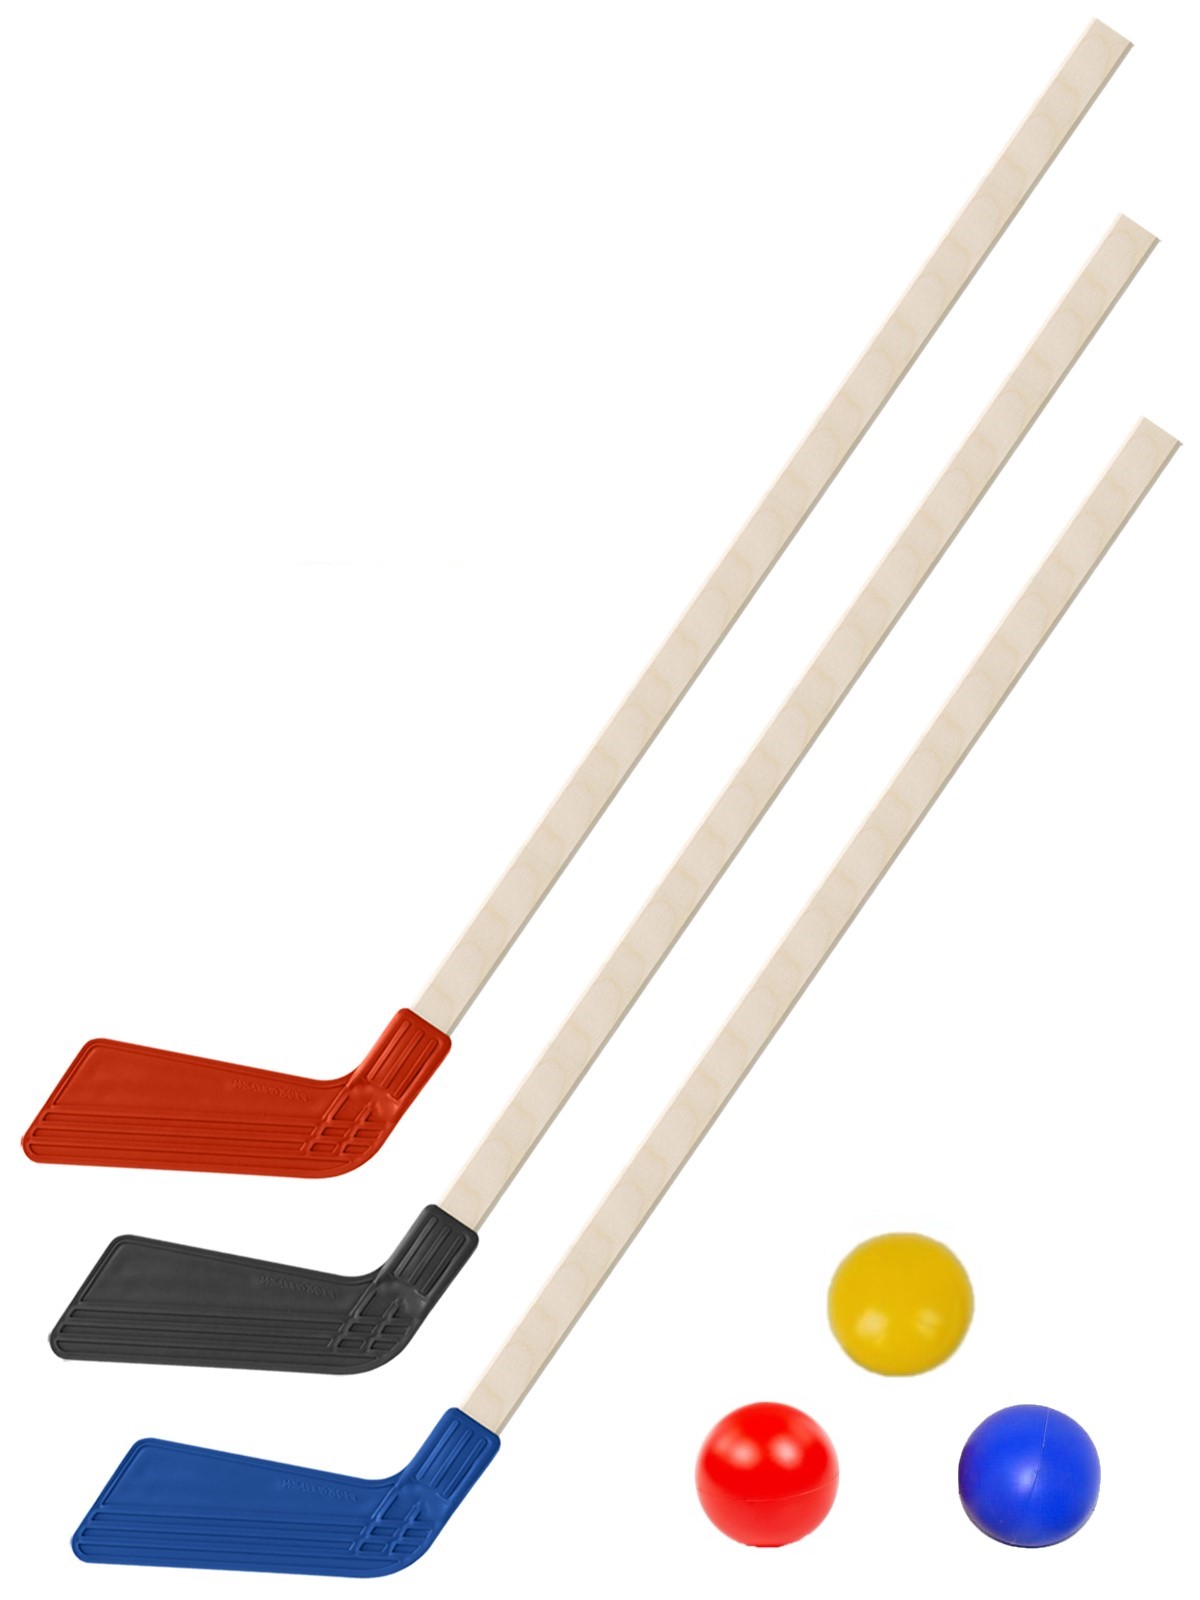 Детский хоккейный набор Задира-плюс Клюшка хоккейная детская 3 шт(черн+красн+синяя)+3 мяча